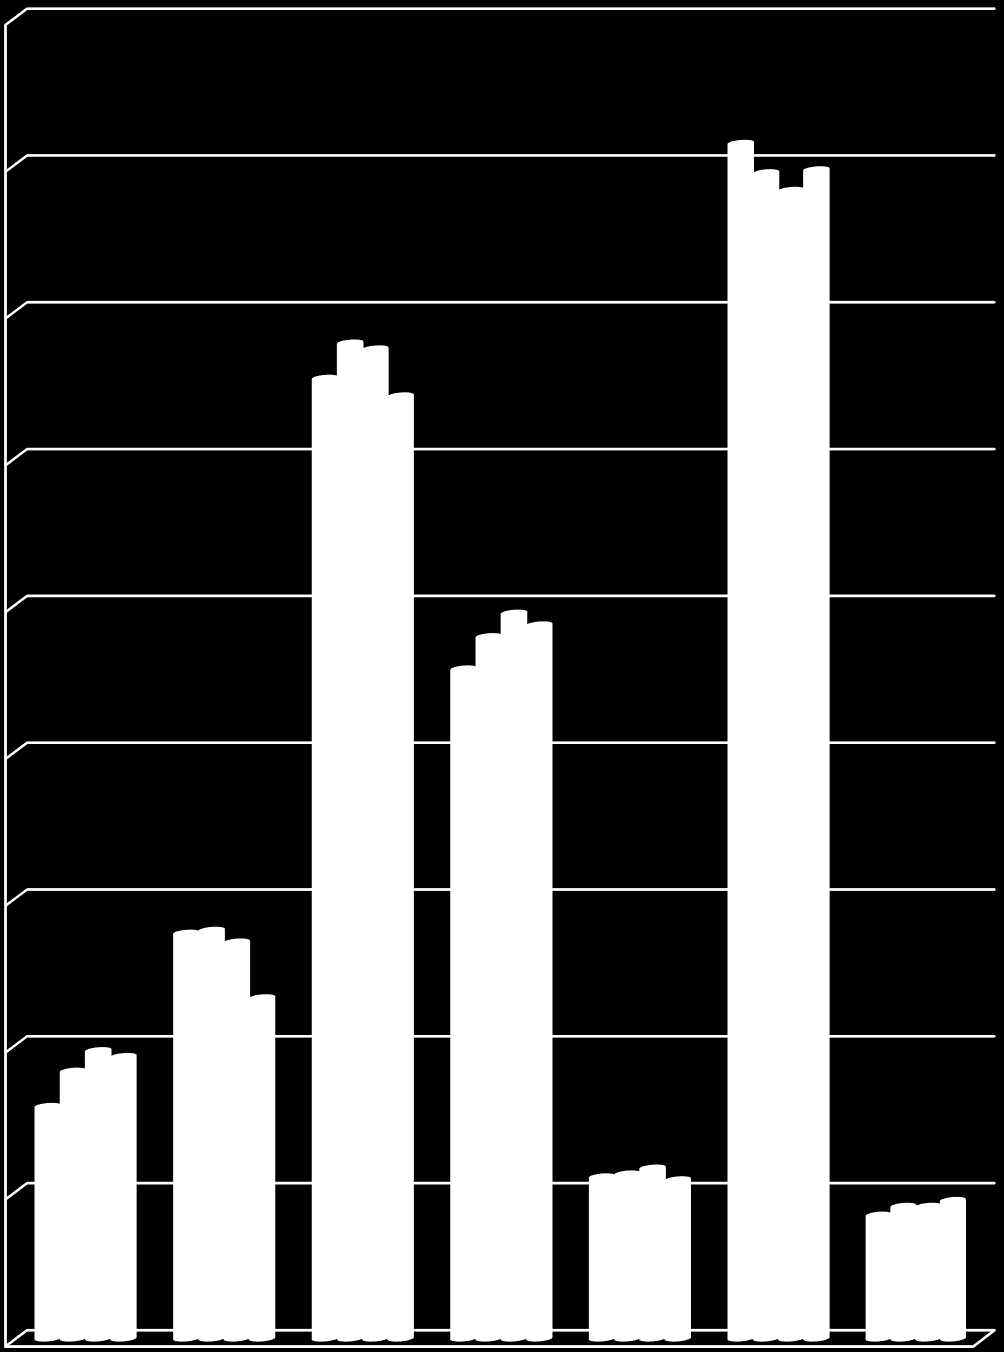 Akademik Personel sayılarının son dört yıldaki değişimi Grafik 1 de gösterilmiştir.